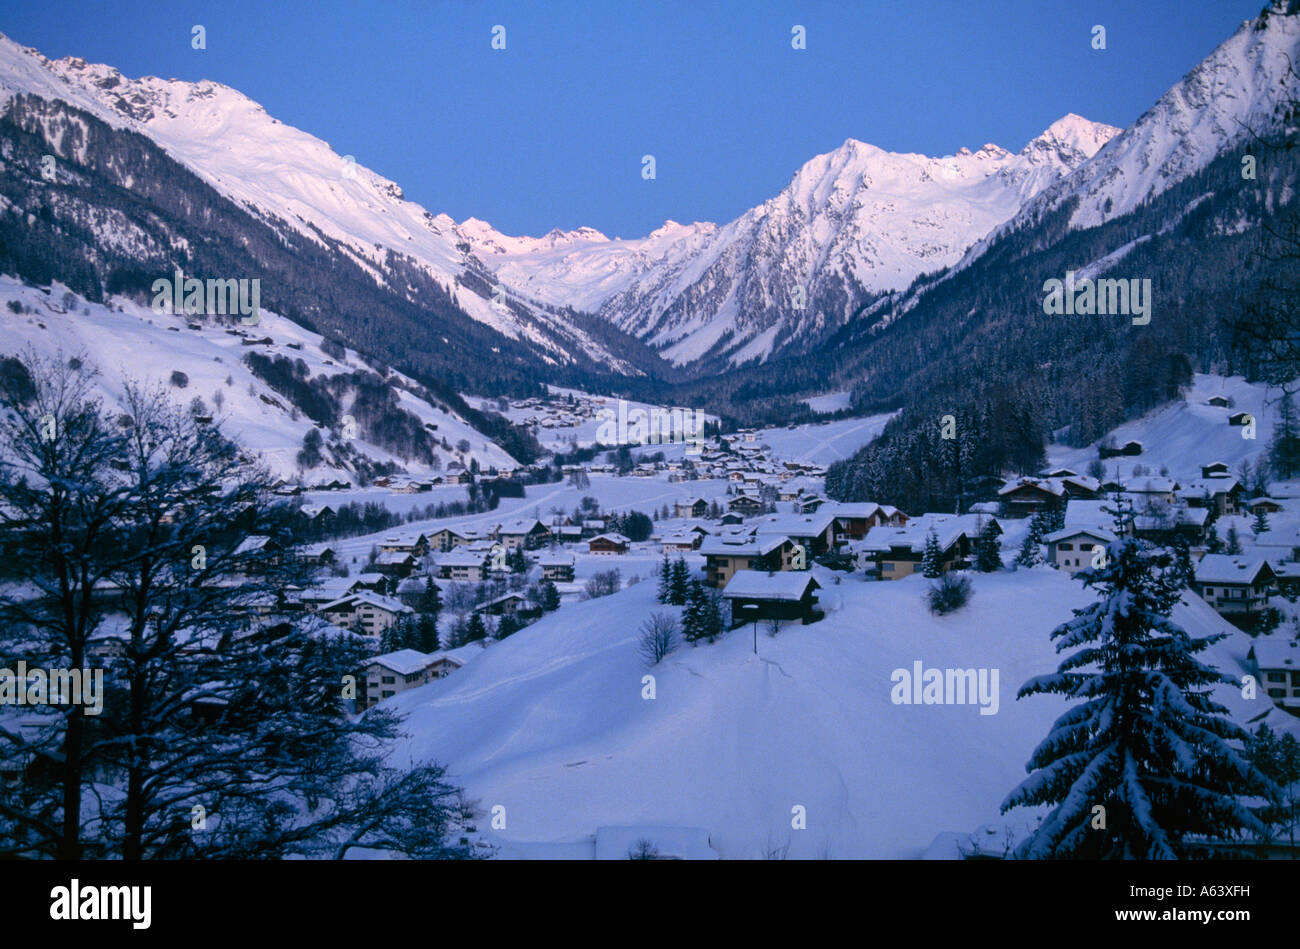 Vista dal villaggio di Klosters a gamma della montagna di silvretta prattigau valle alpi svizzere del cantone dei Grigioni Svizzera Foto Stock